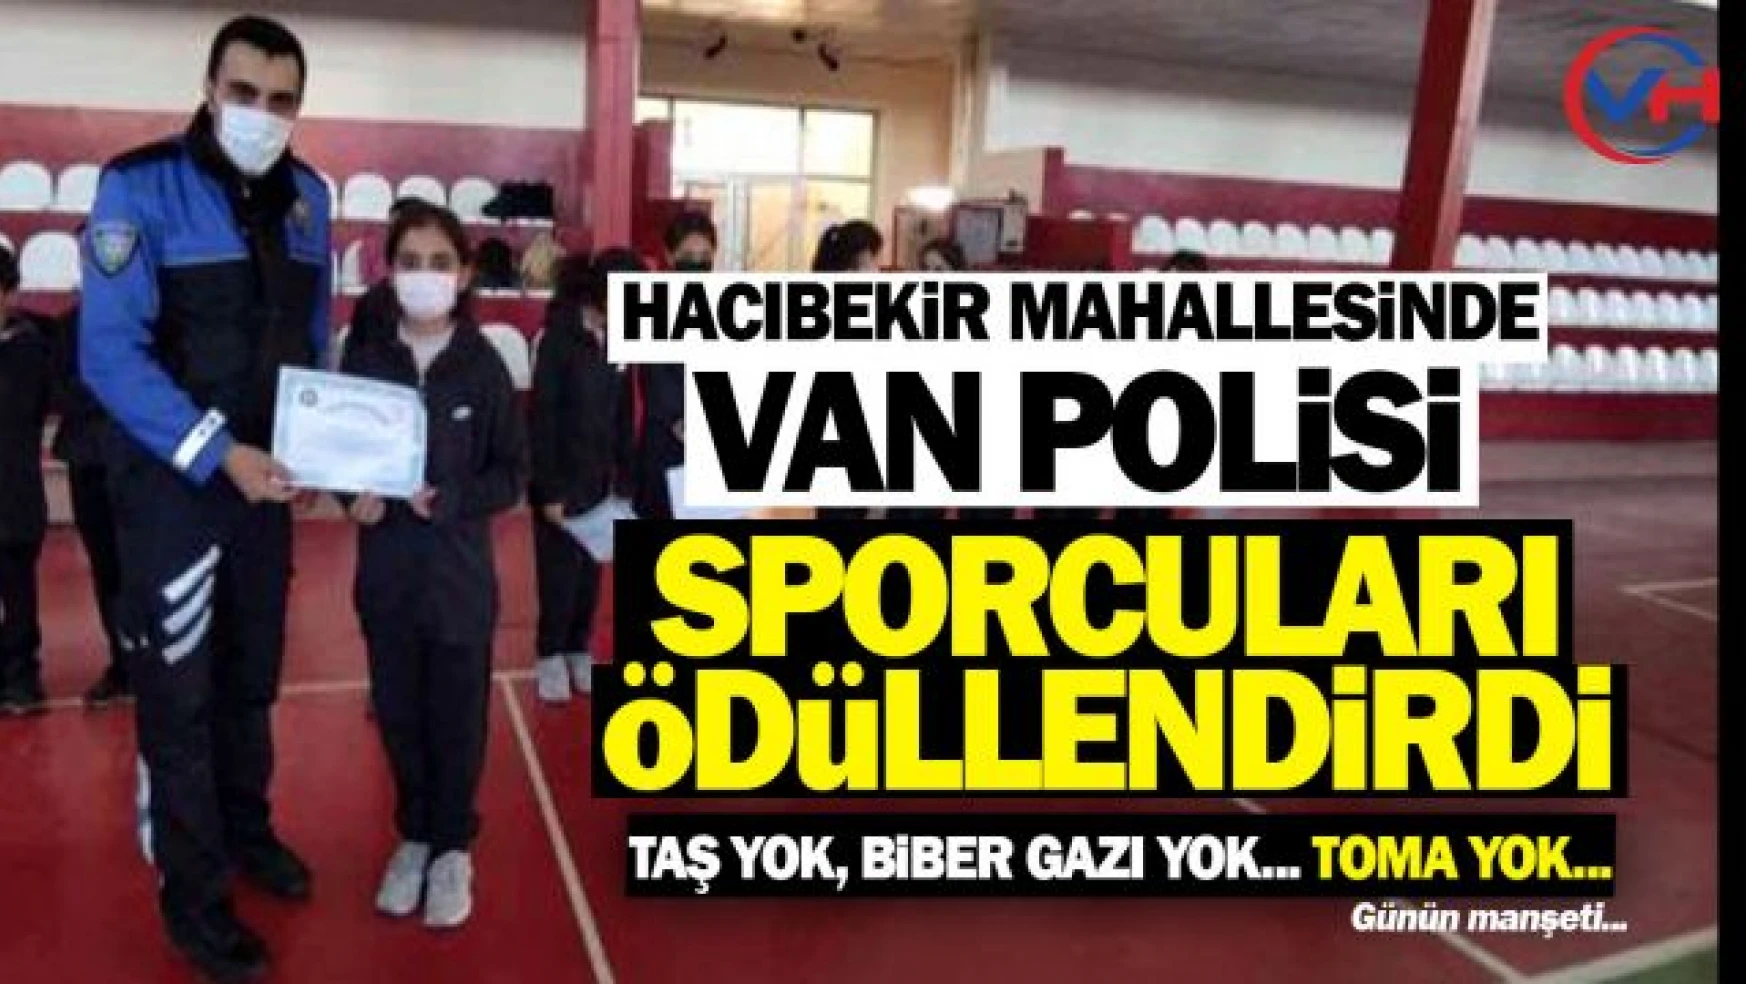 Van Polisi, Hacıbekir Mahallesindeki başarılı sporculara sertifika verdi!